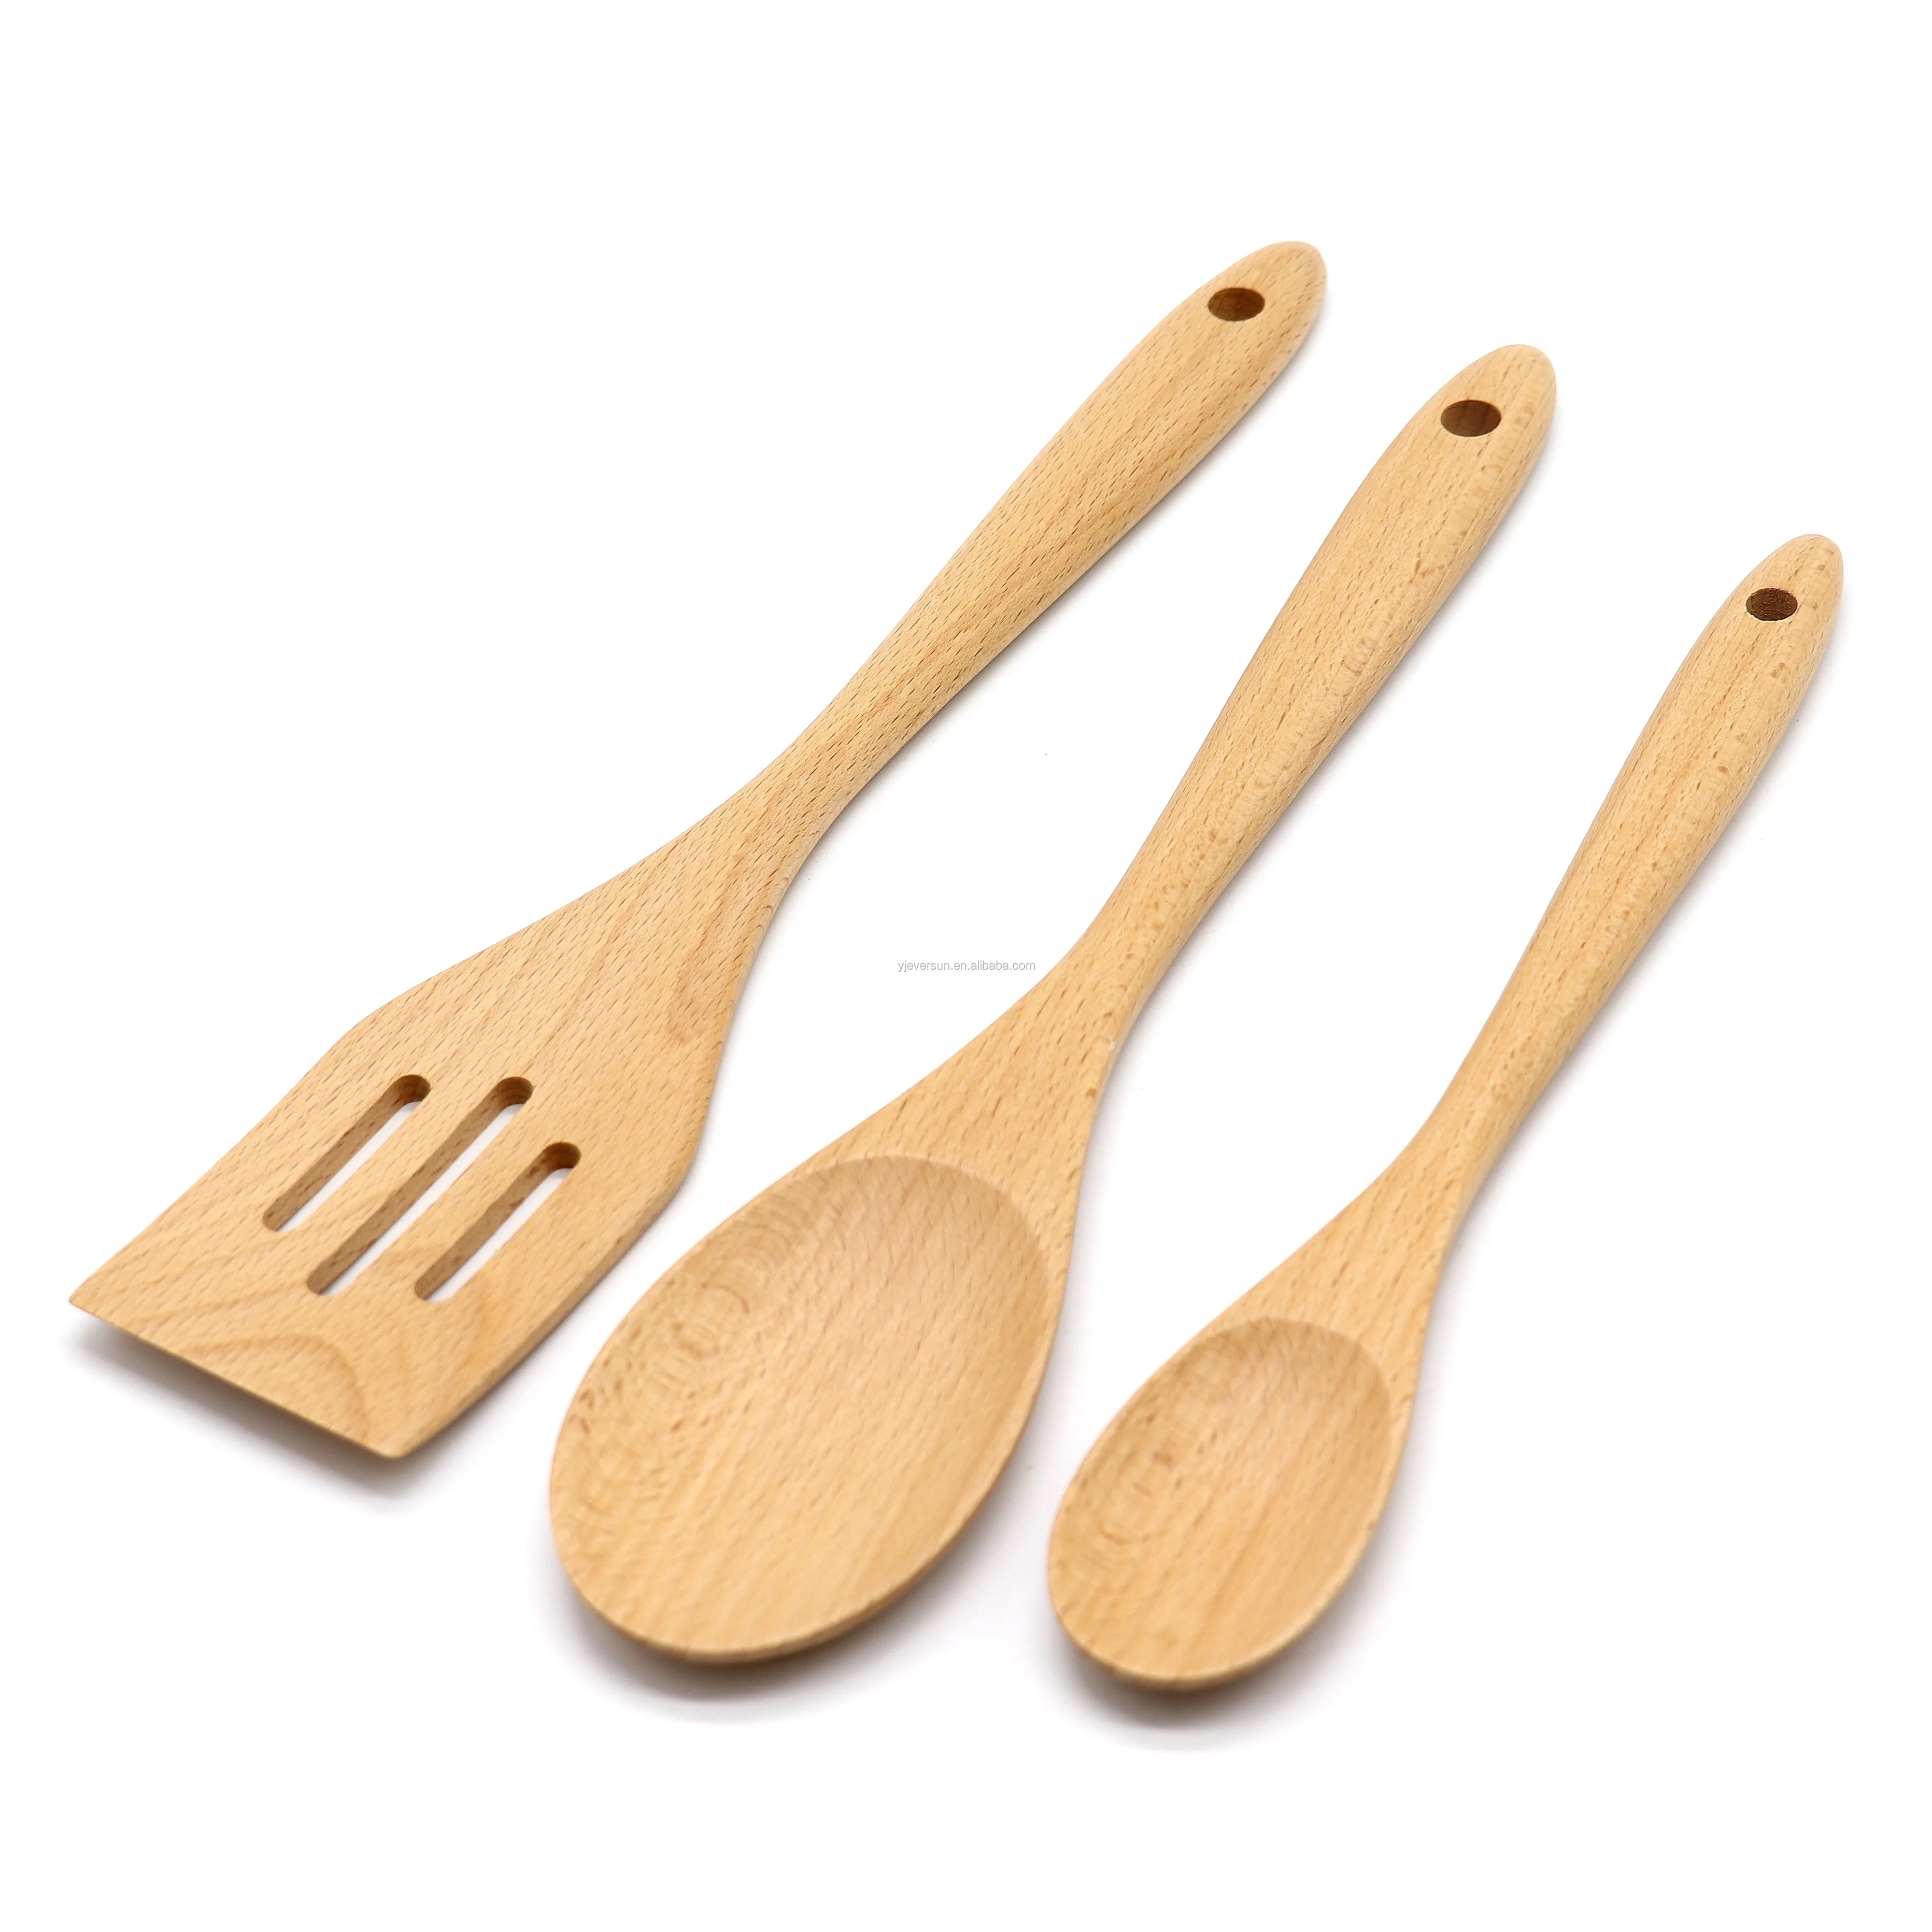 高品质的木材 beech 木刮刀开槽特纳勺子厨房用具套装炊具炊具